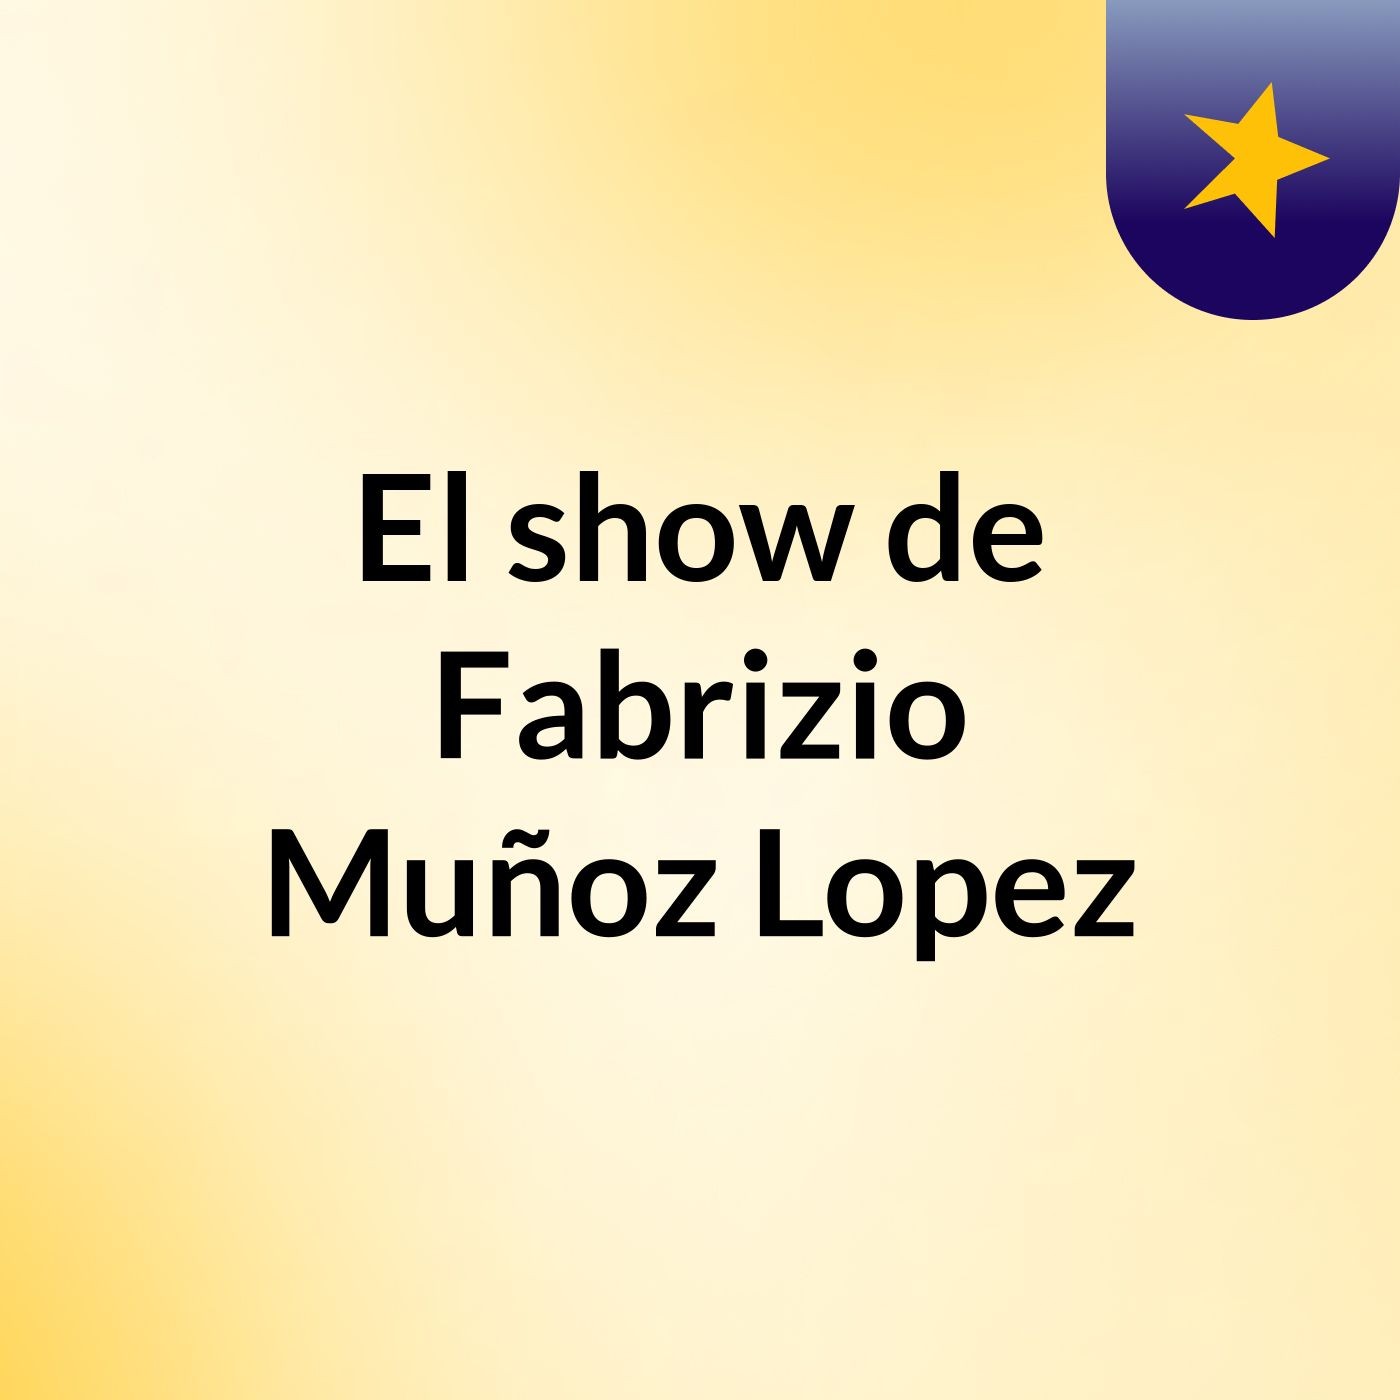 El show de Fabrizio Muñoz Lopez